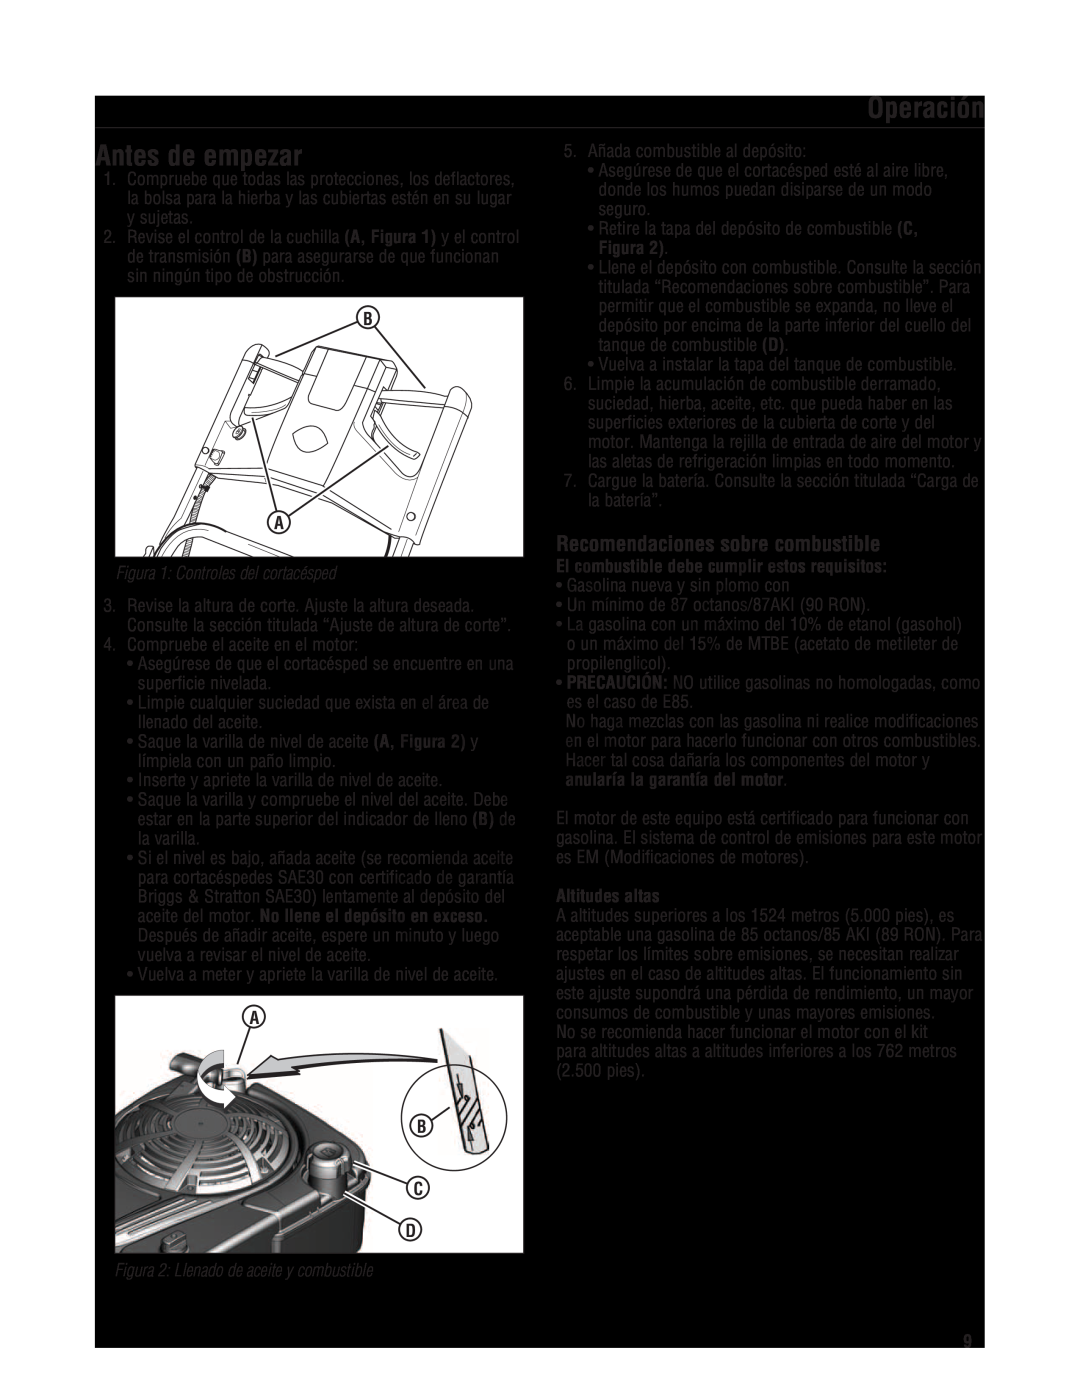 Snapper 7800580 manual Antes de empezar, Operación, Recomendaciones sobre combustible, Figura 1 Controles del cortacésped 